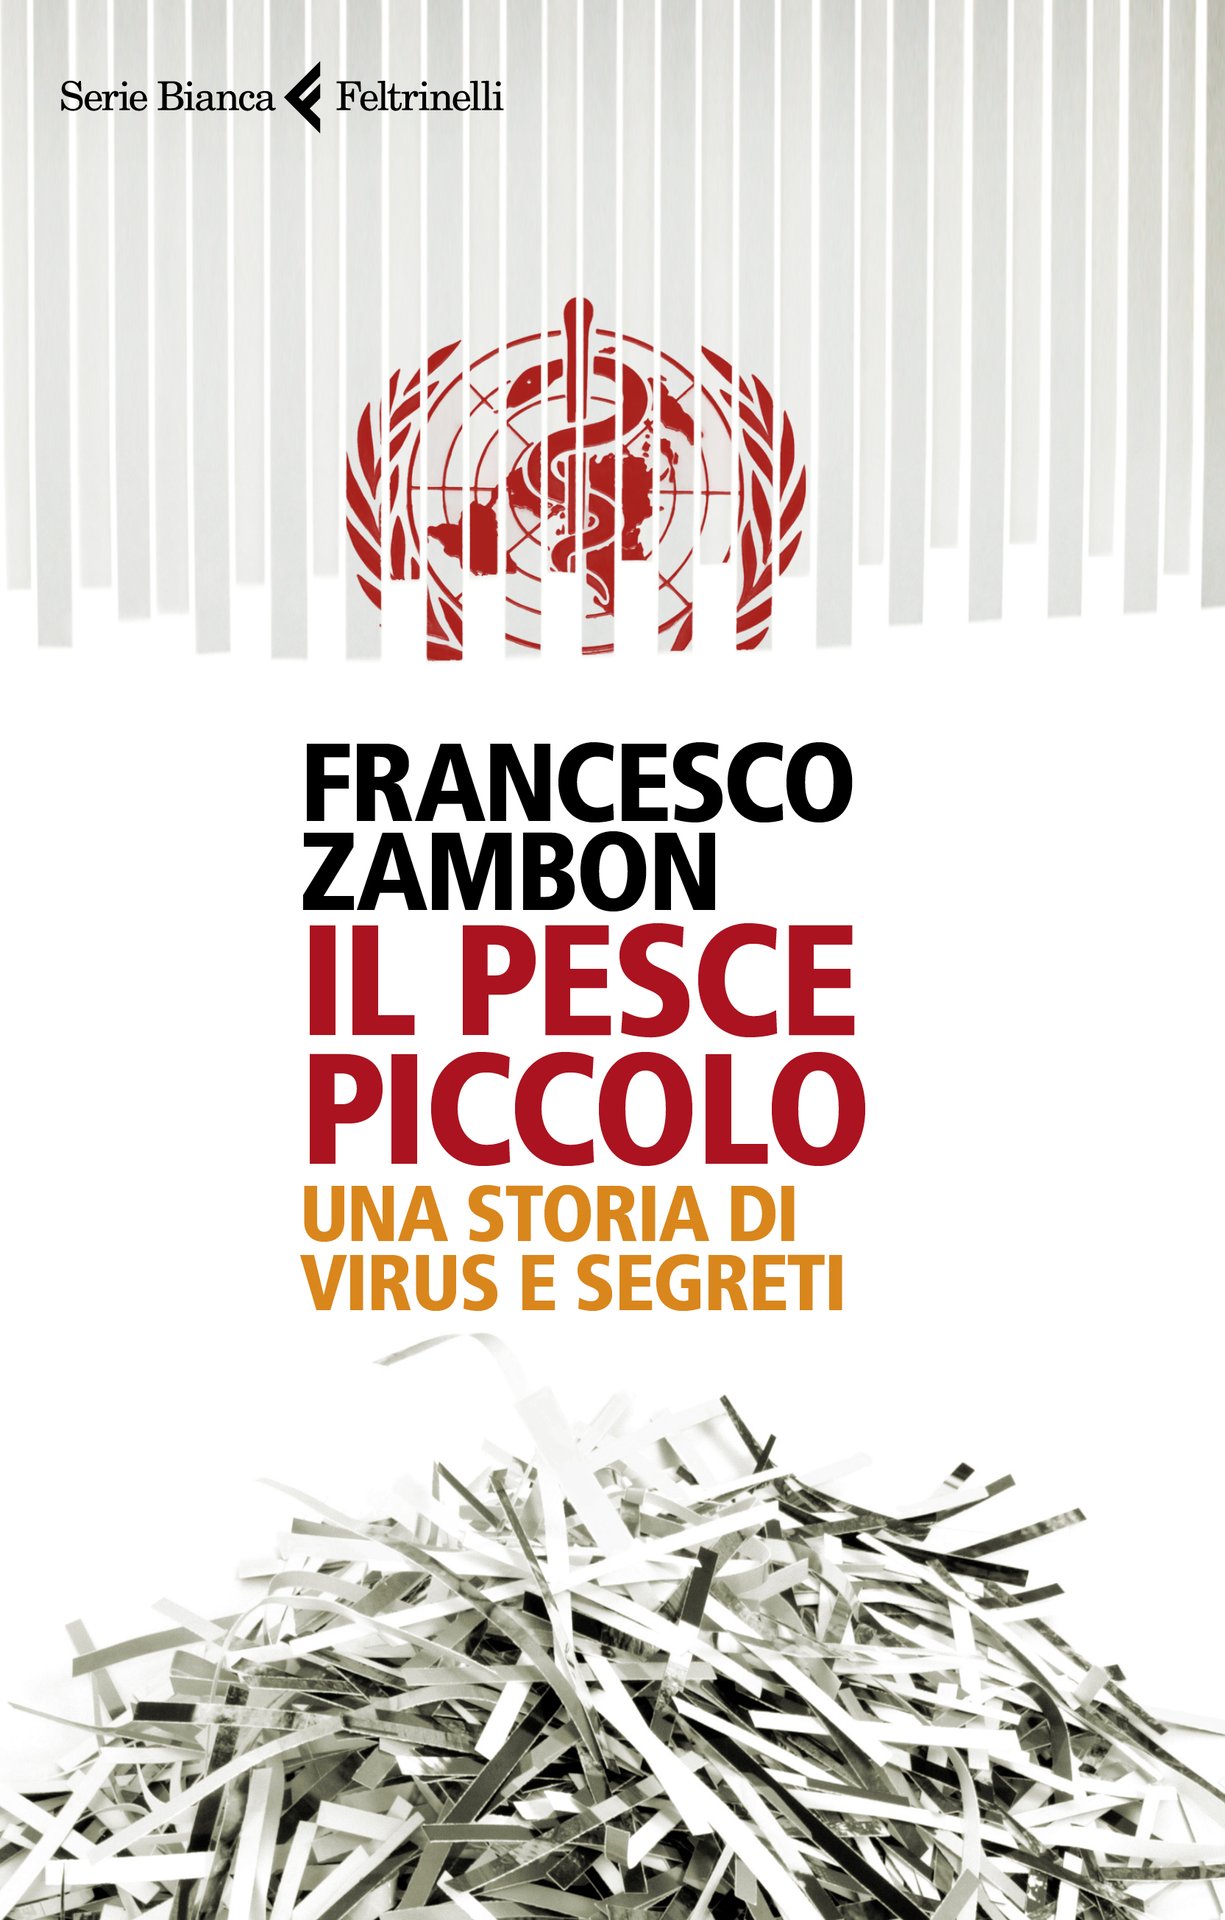 Francesco Zambon: la versione del ricercatore dell’Organizzazione Mondiale della Sanità